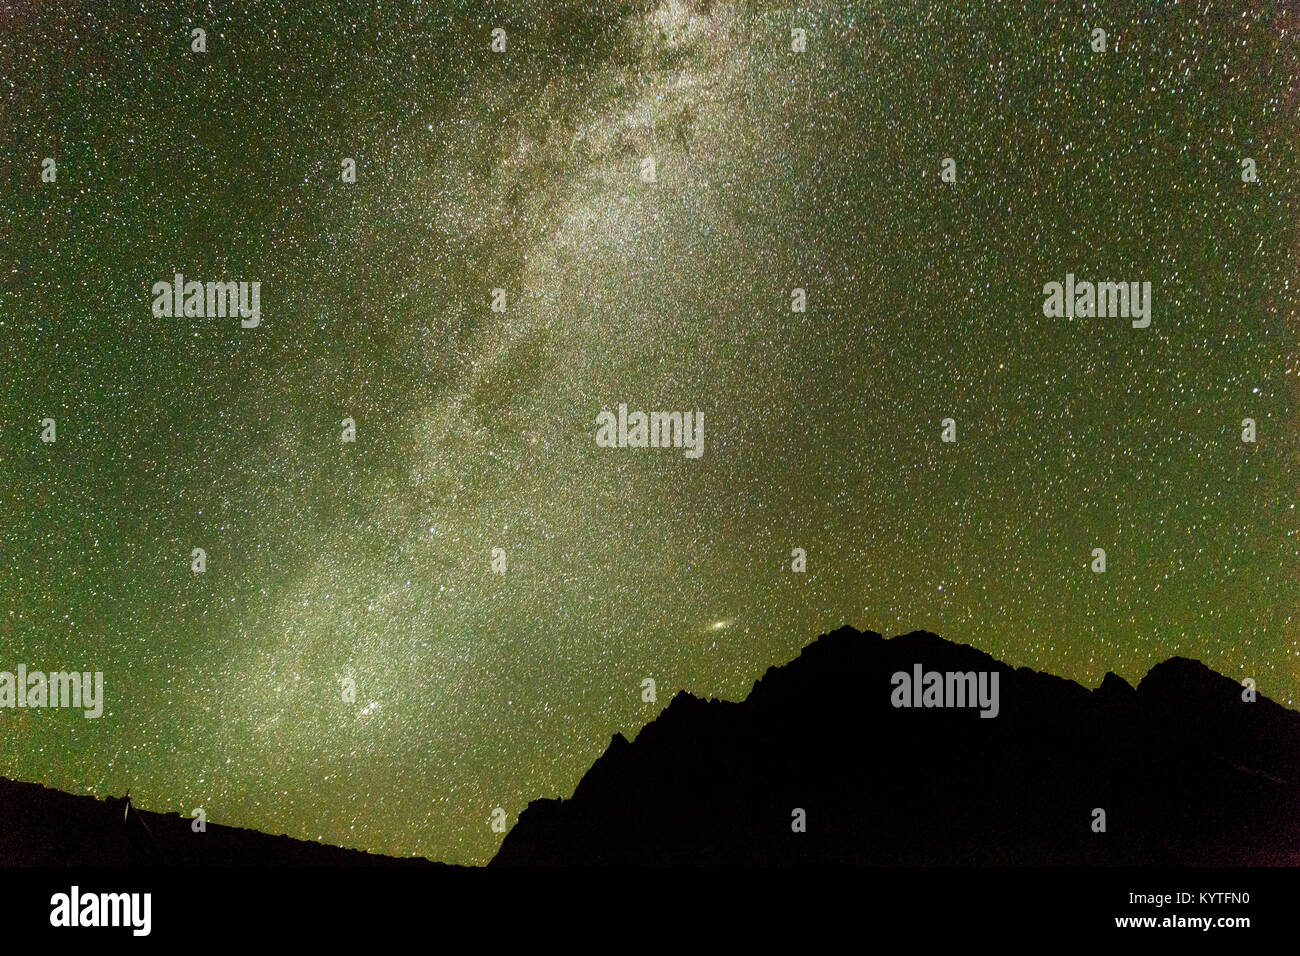 Voie Lactée vu de camping sur la Satsar Cachemire trek des grands lacs à Sonamarg, Jammu-et-Cachemire, en Inde. Ciel plein d'étoiles, Astro photo Banque D'Images